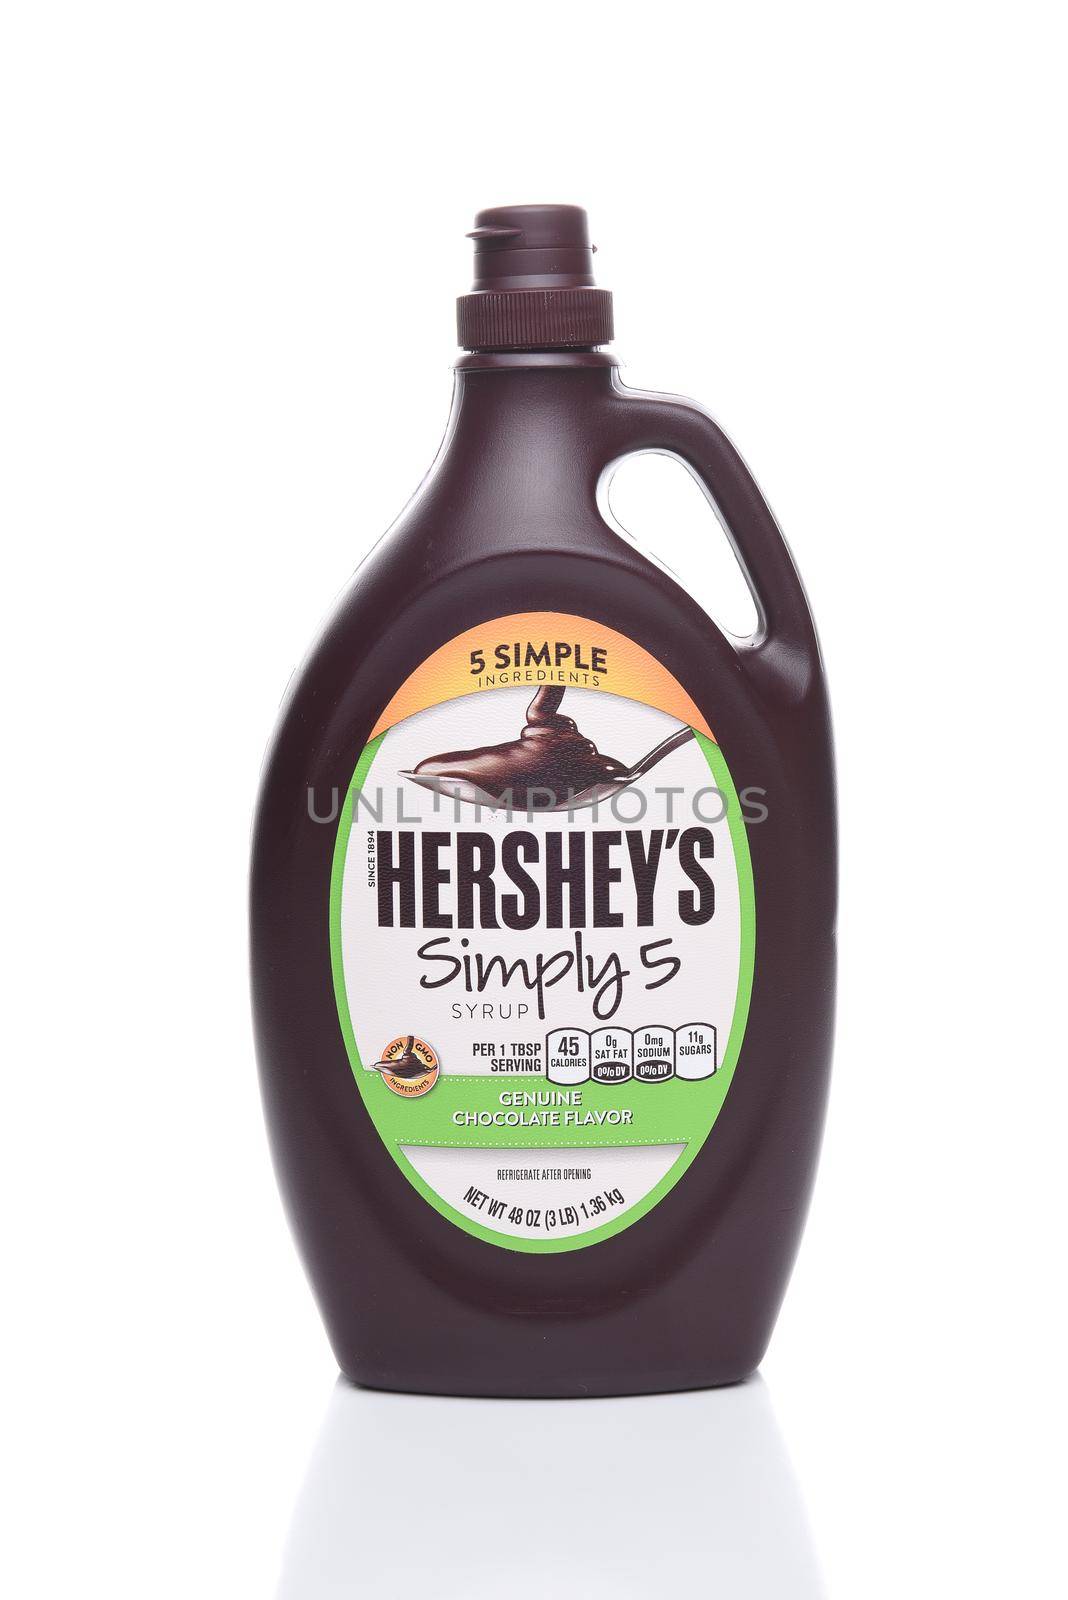 Hersheys Simply 5 Syrup by sCukrov